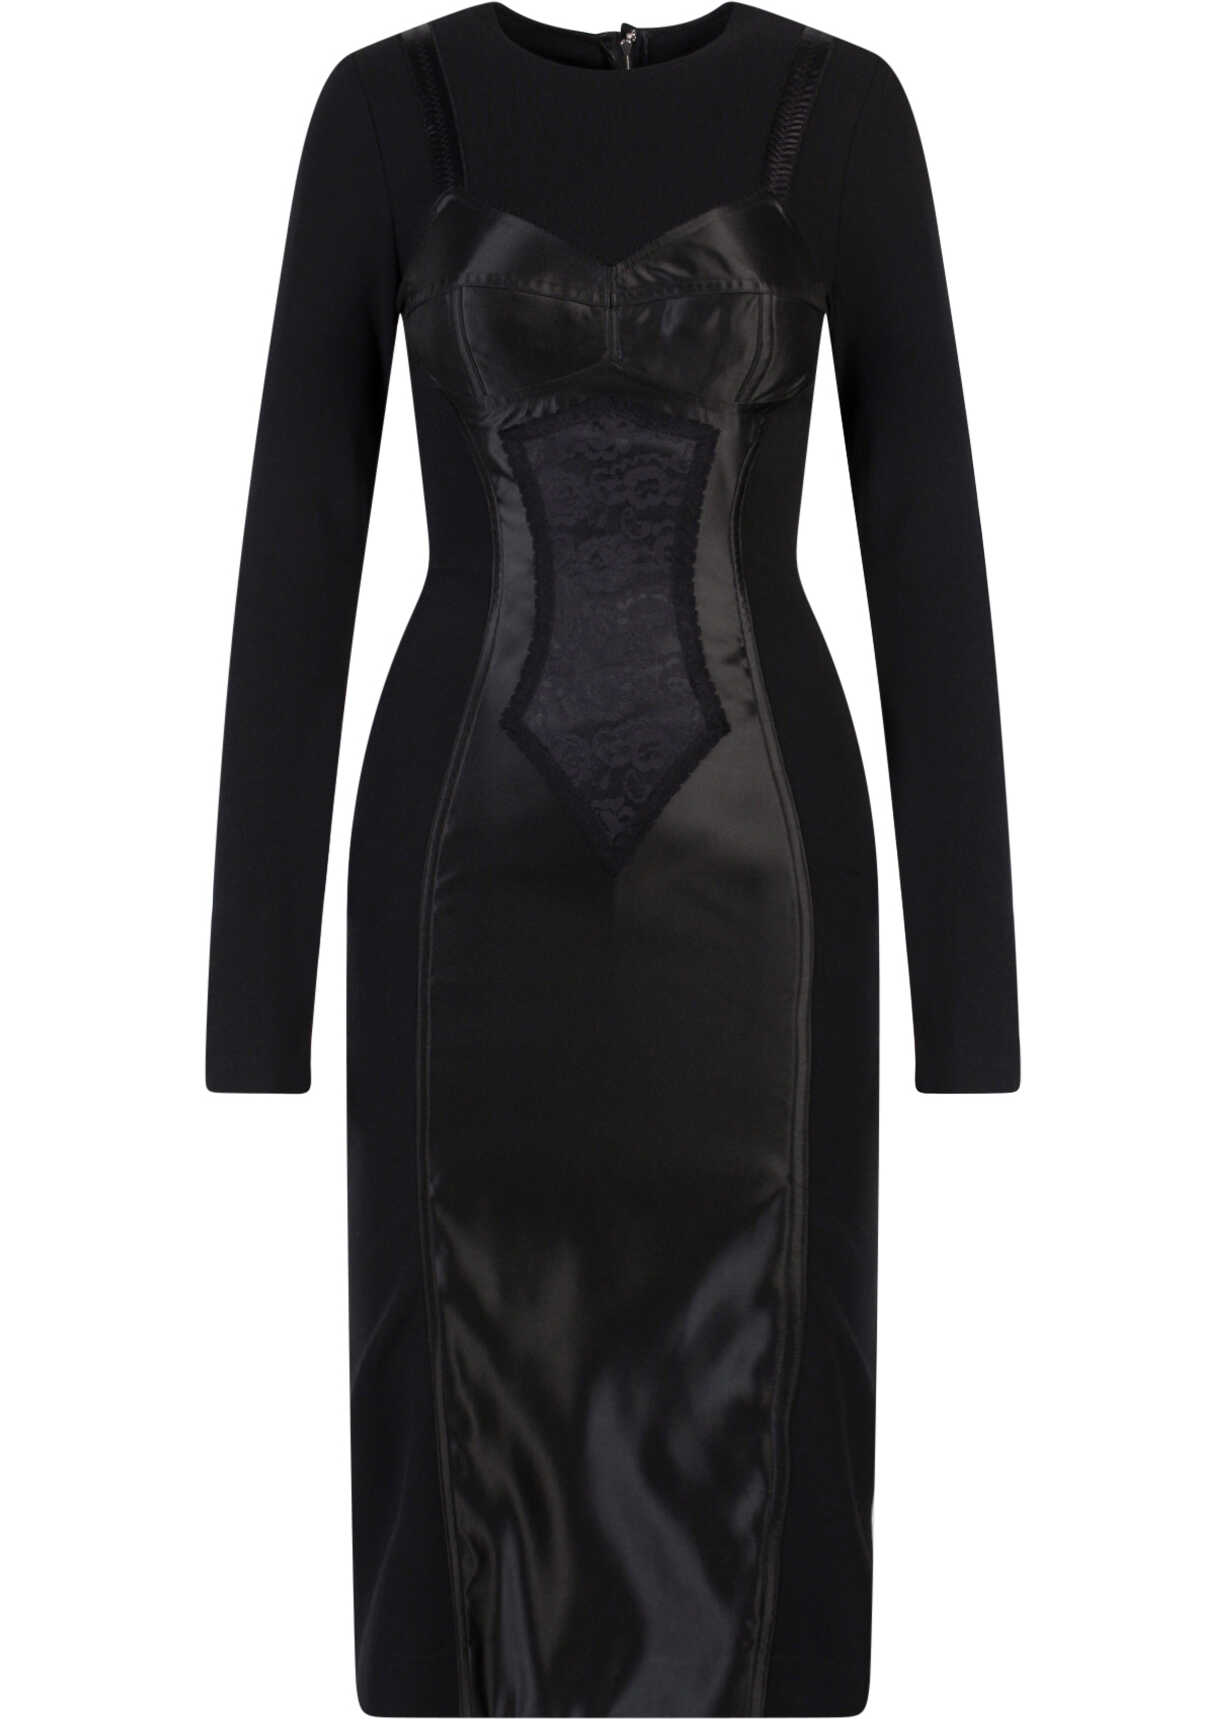 Poze Dolce & Gabbana Dress Black